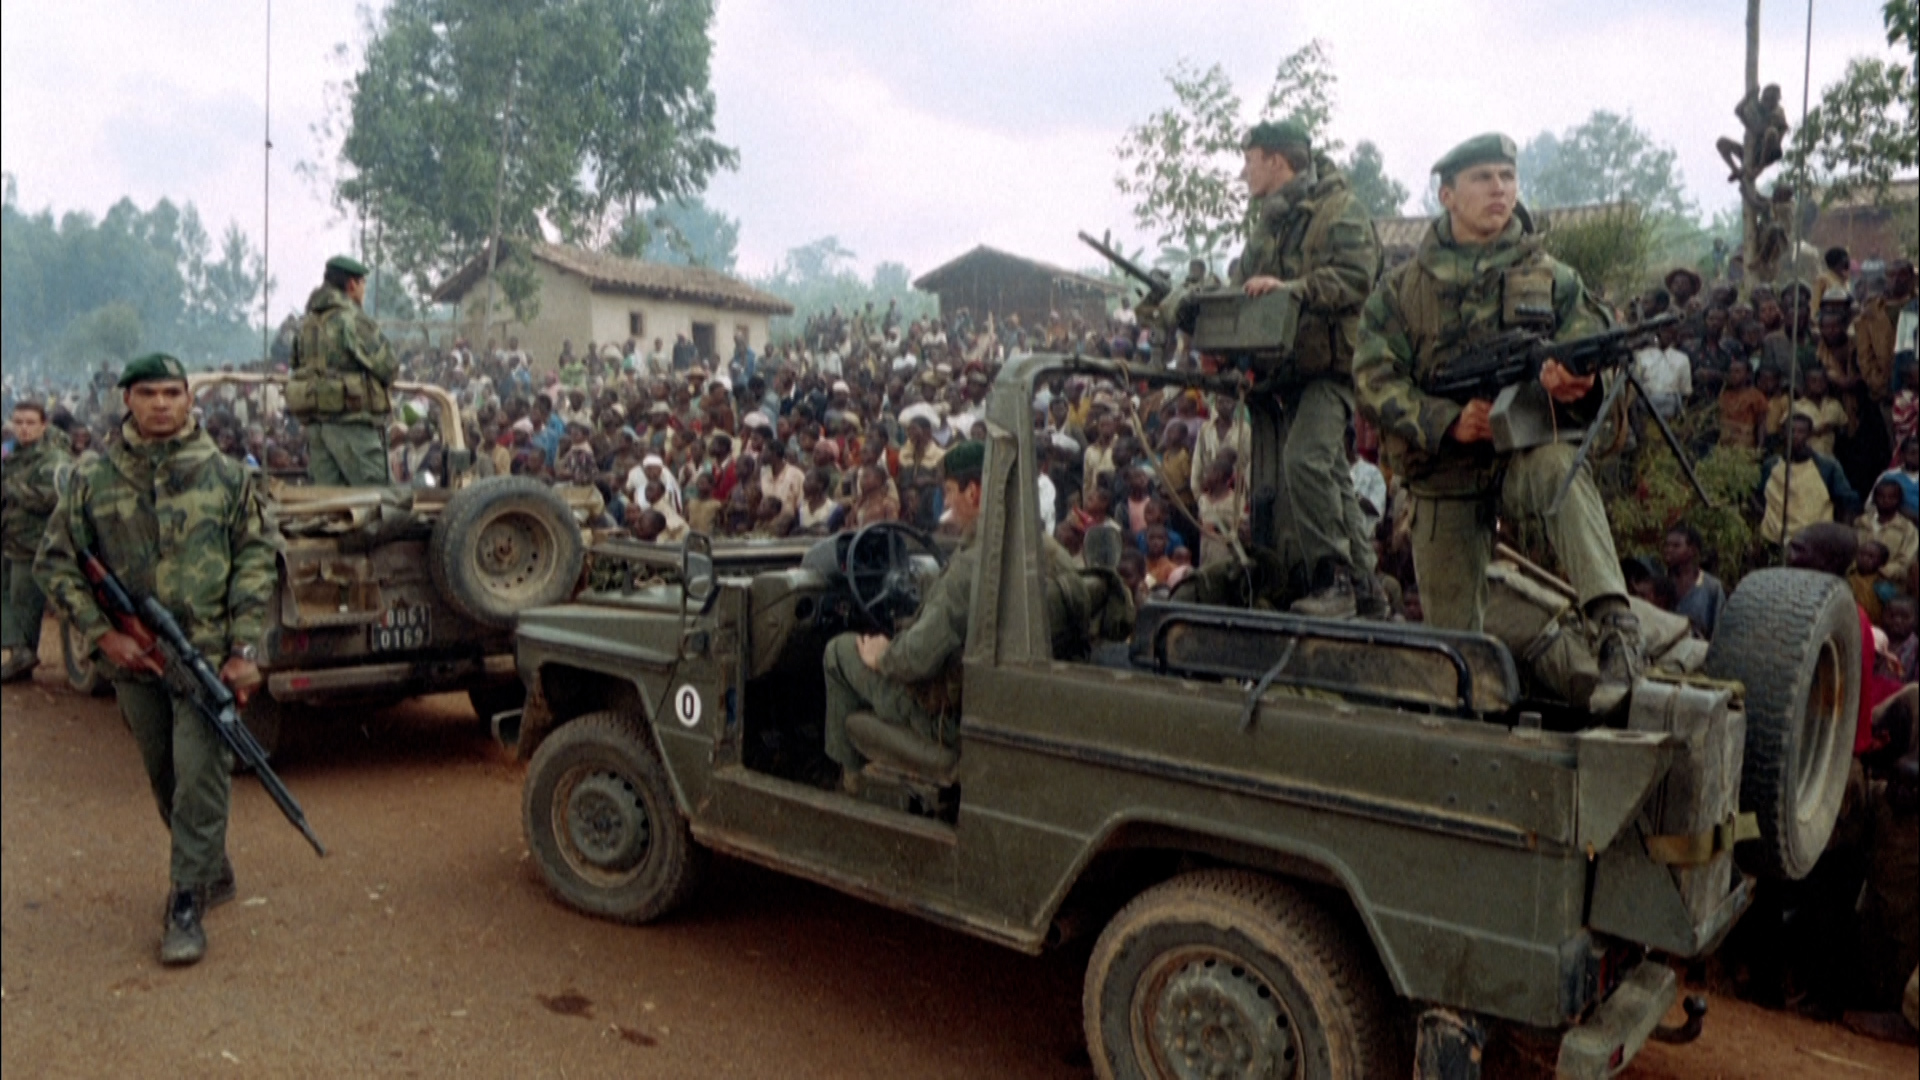 Un rapport de 2021 pointe « un ensemble de responsabilités lourdes et accablantes » de la France dans le génocide rwandais. AFP